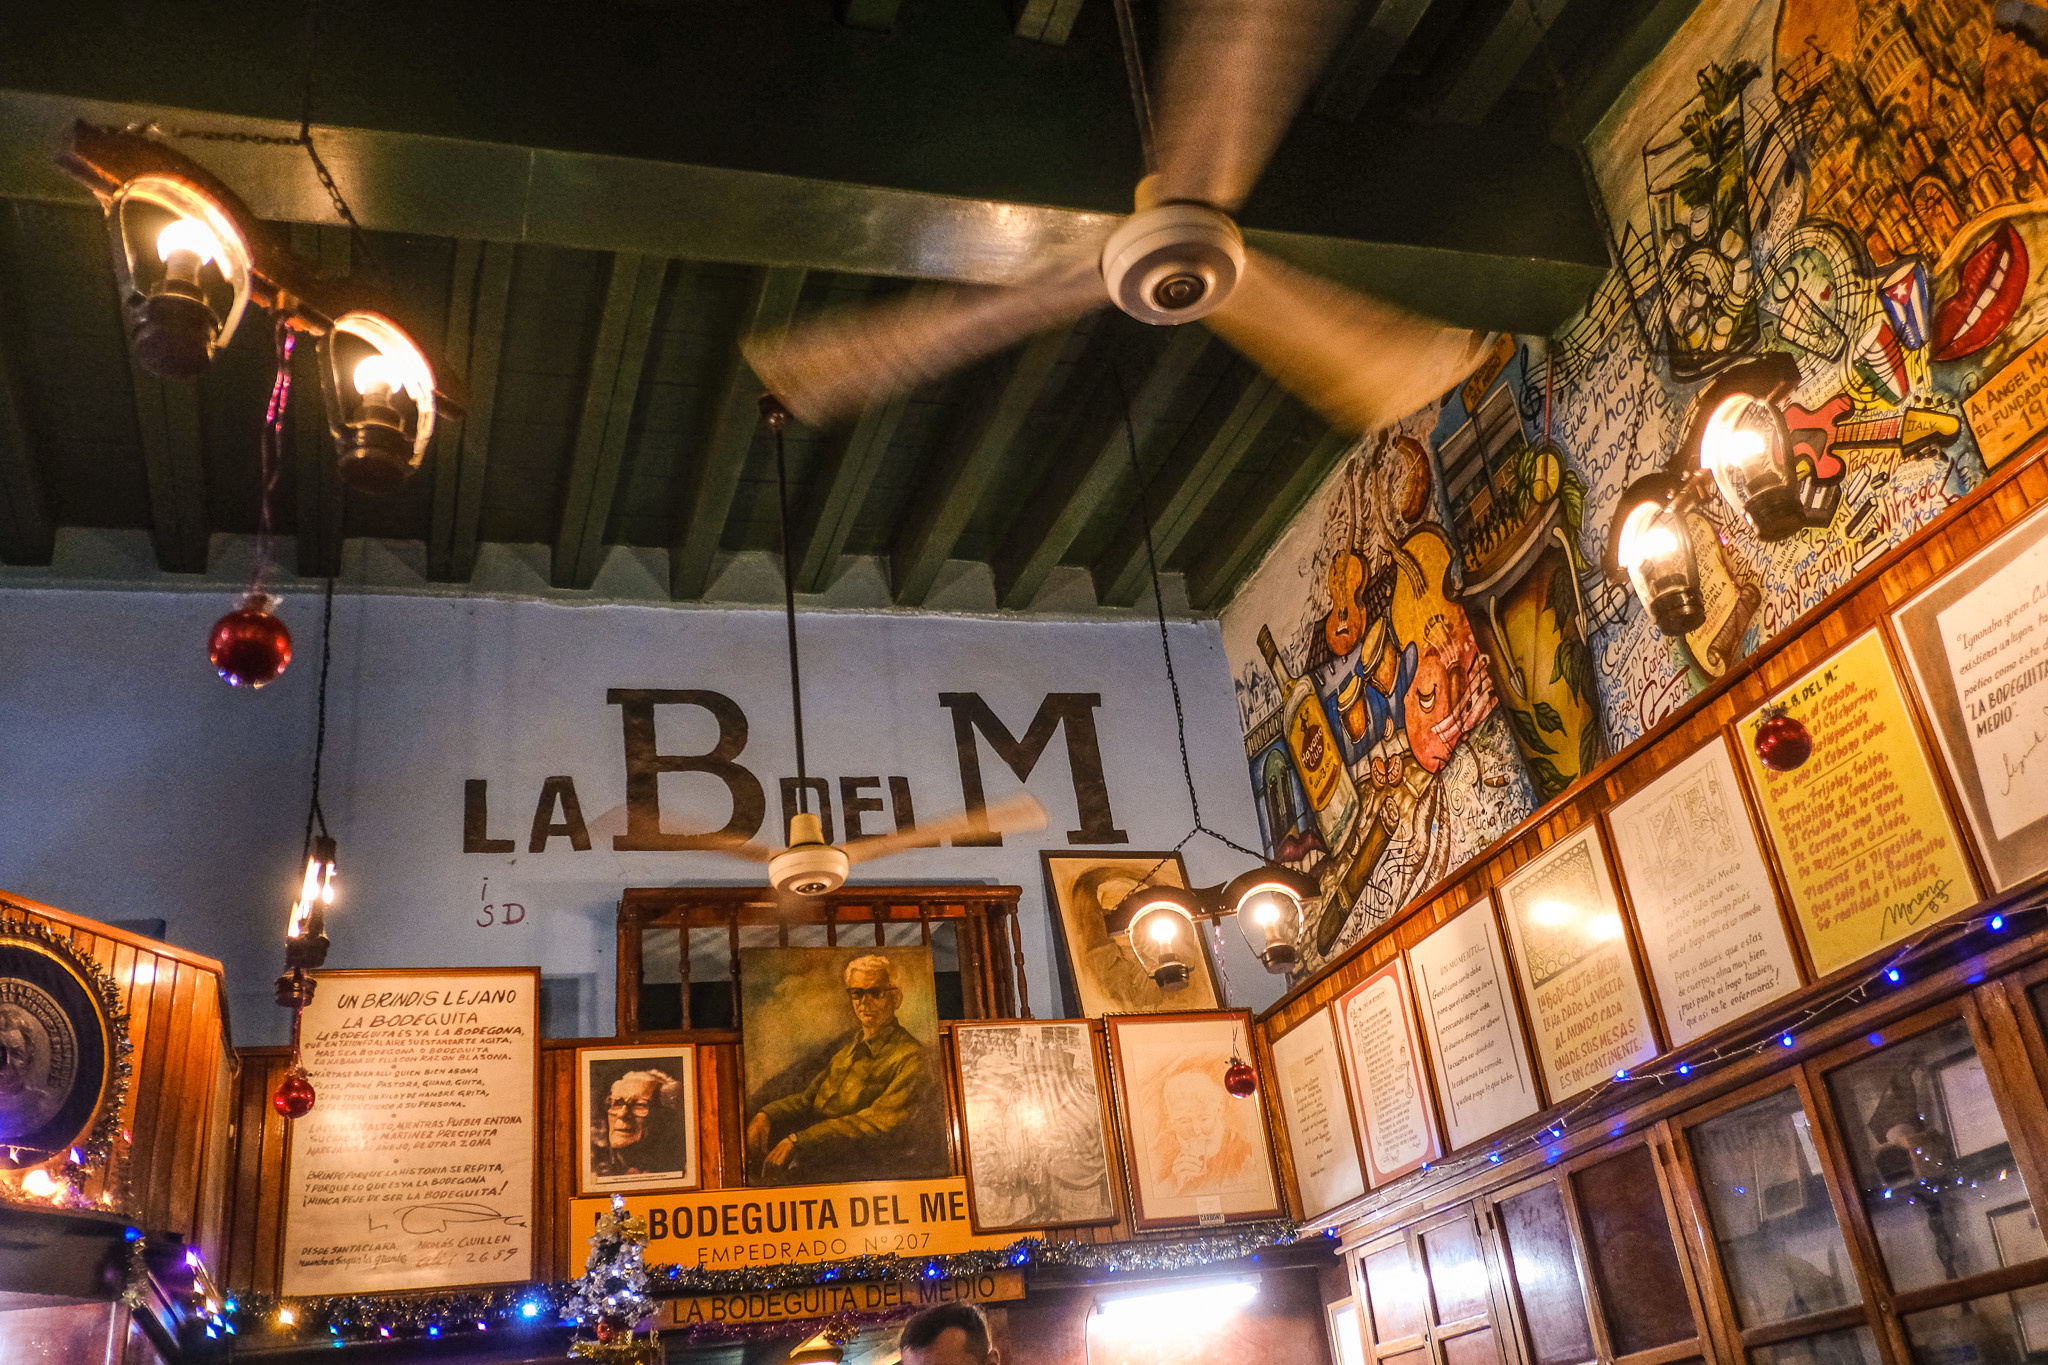 Знаменитый ресторан La Bodeguita del Medio, в котором регулярно бывал Эрнест Хемингуэй